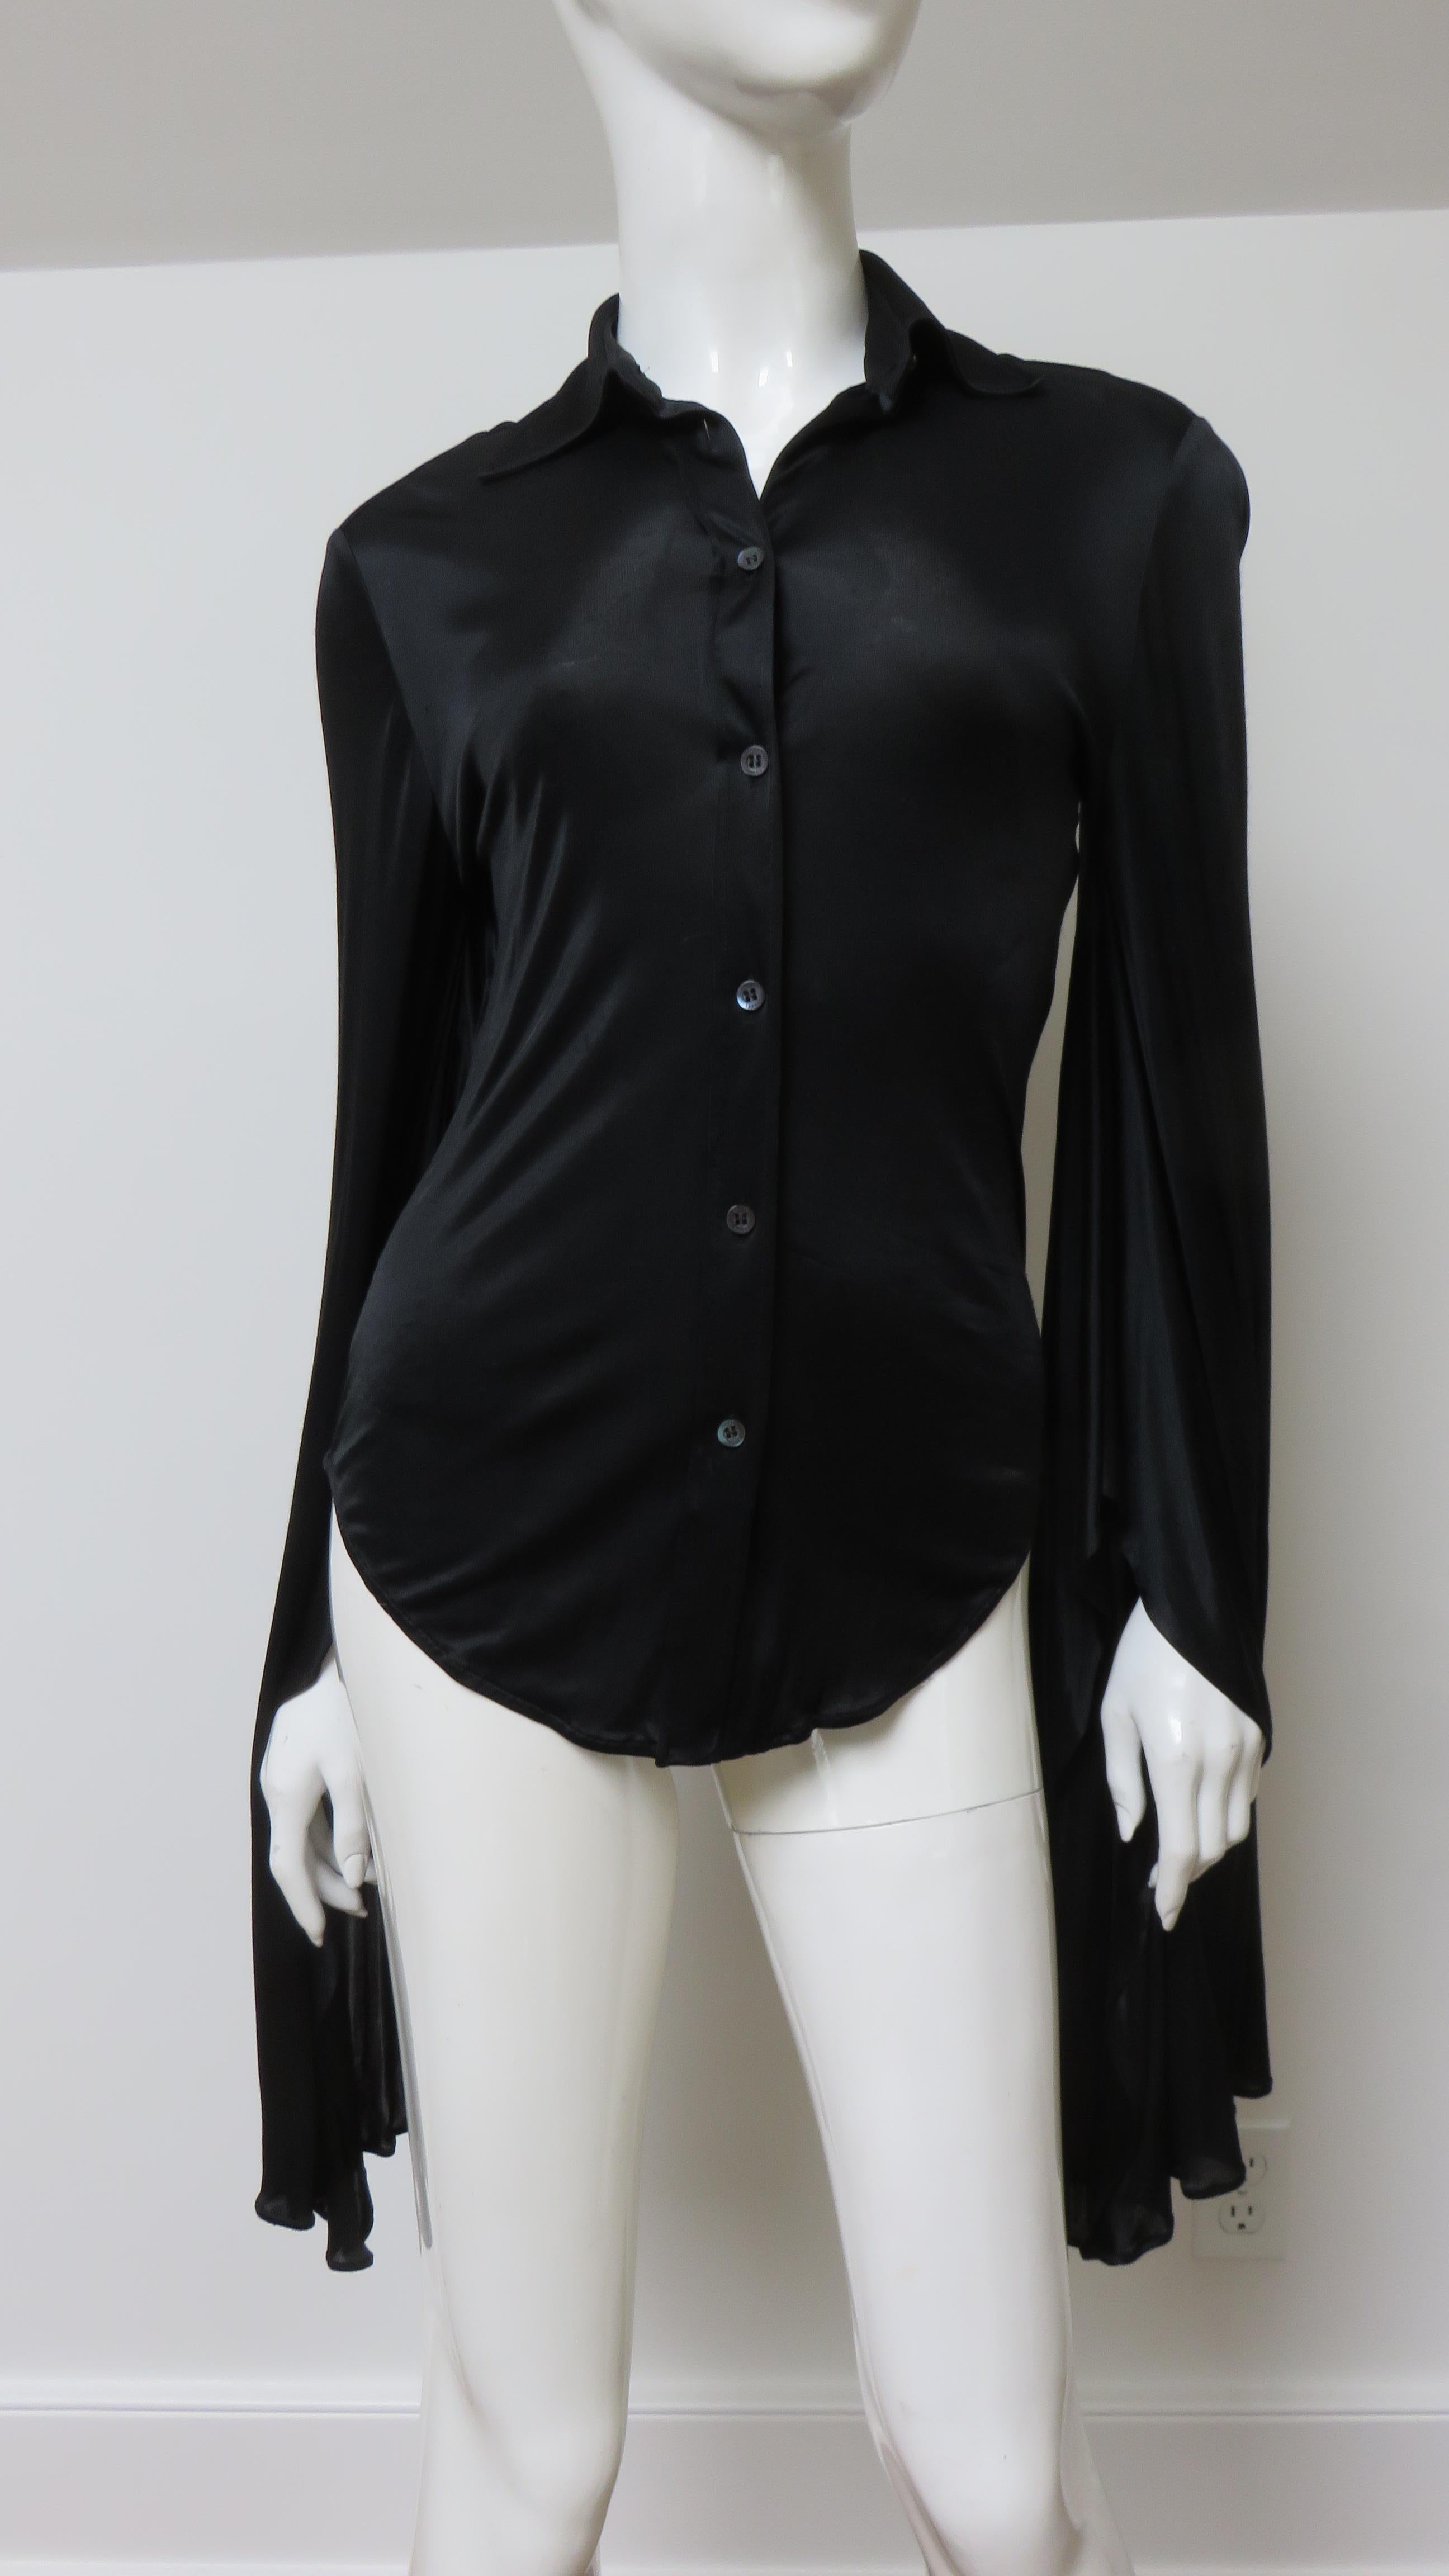 Ein fabelhaftes schwarzes Hemd aus feiner Stretch-Seide, Top, Bluse von Tom Ford für Gucci.  Es ist halb tailliert, hat einen Hemdkragen, einen schwarzen Perlmuttknopf mit Gucci-Aufschrift auf der Vorderseite und tolle lange, drapierte